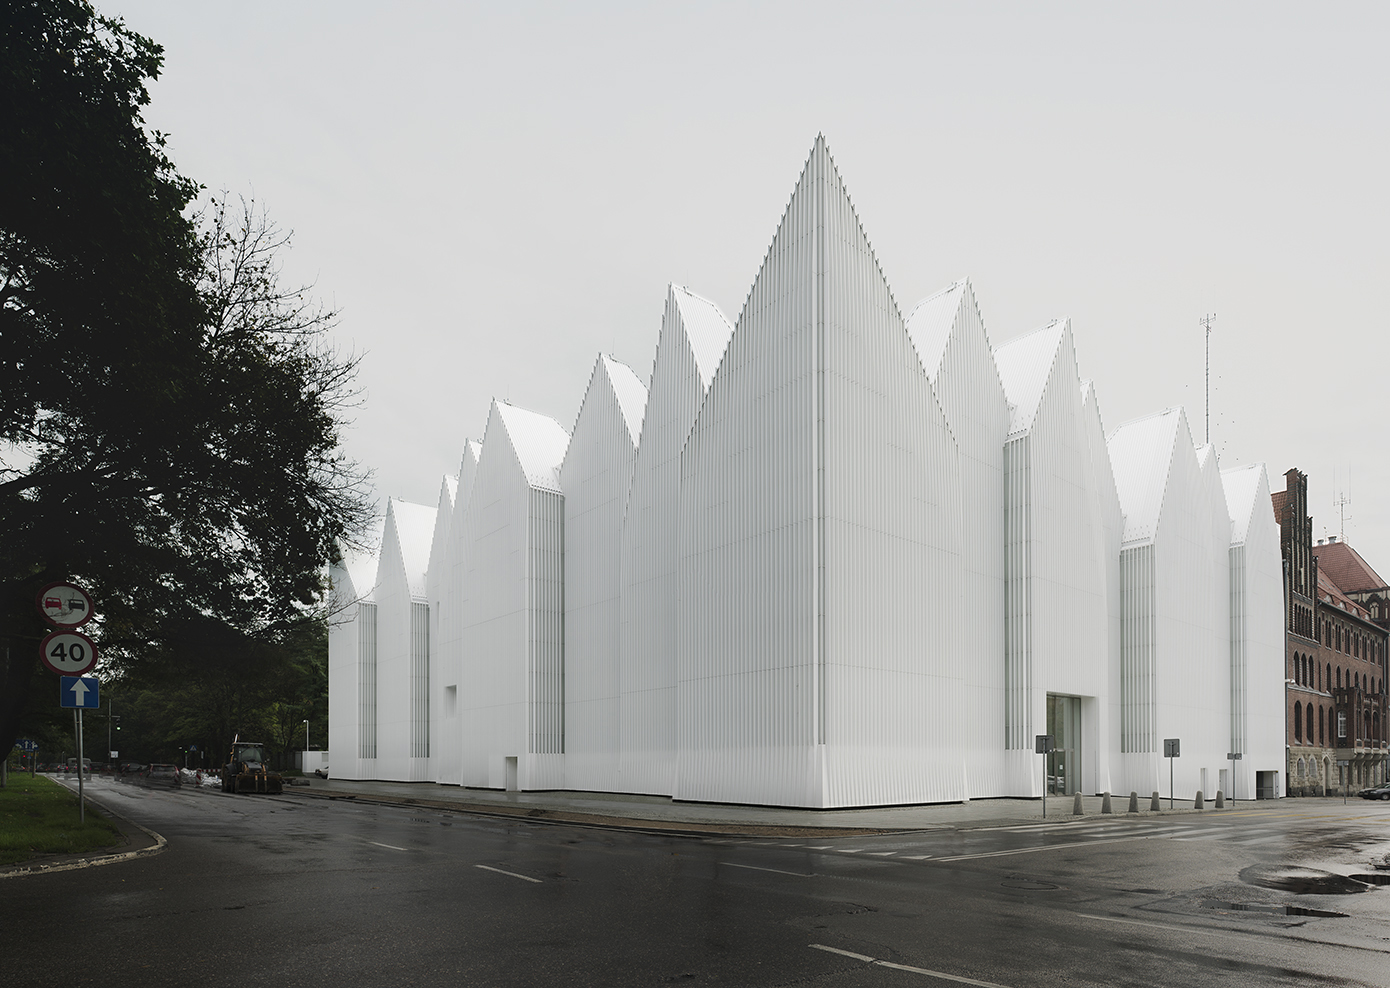 Dos estudis afincats a Barcelona, guanyadors dels Premis Europeus d'Arquitectura Mies Van der Rohe